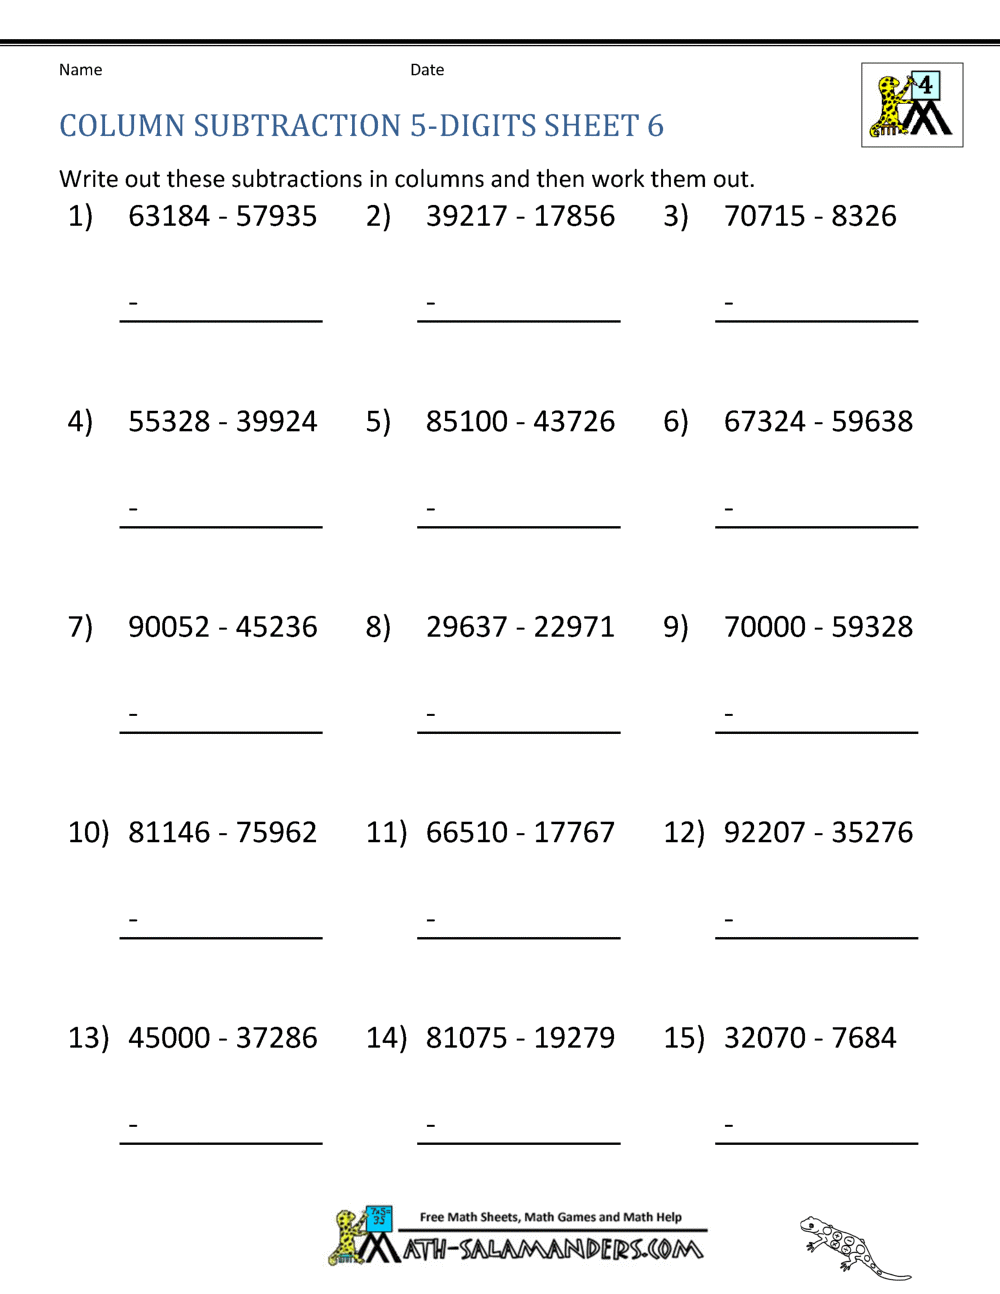 homeschool math worksheet column subtraction 5 digits 6